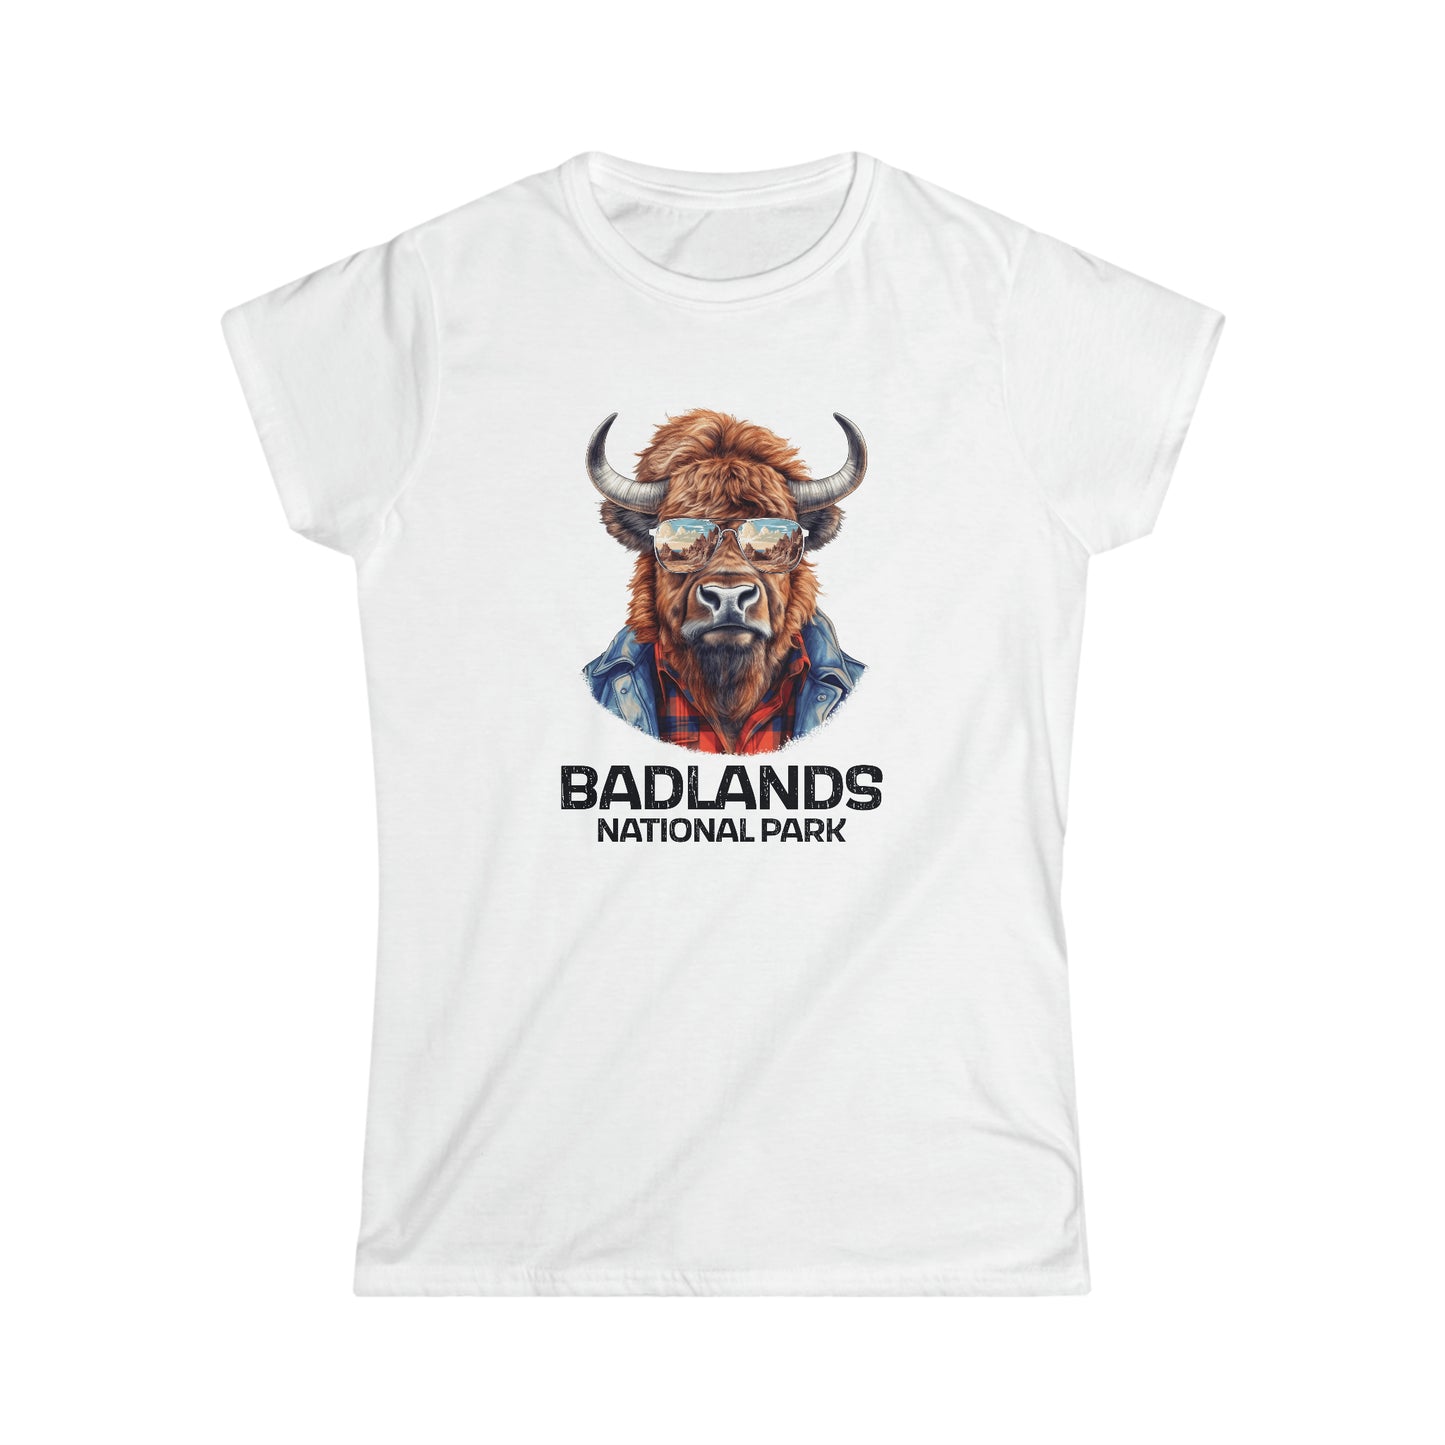 Badlands National Park Women's T-Shirt - Cool Bison